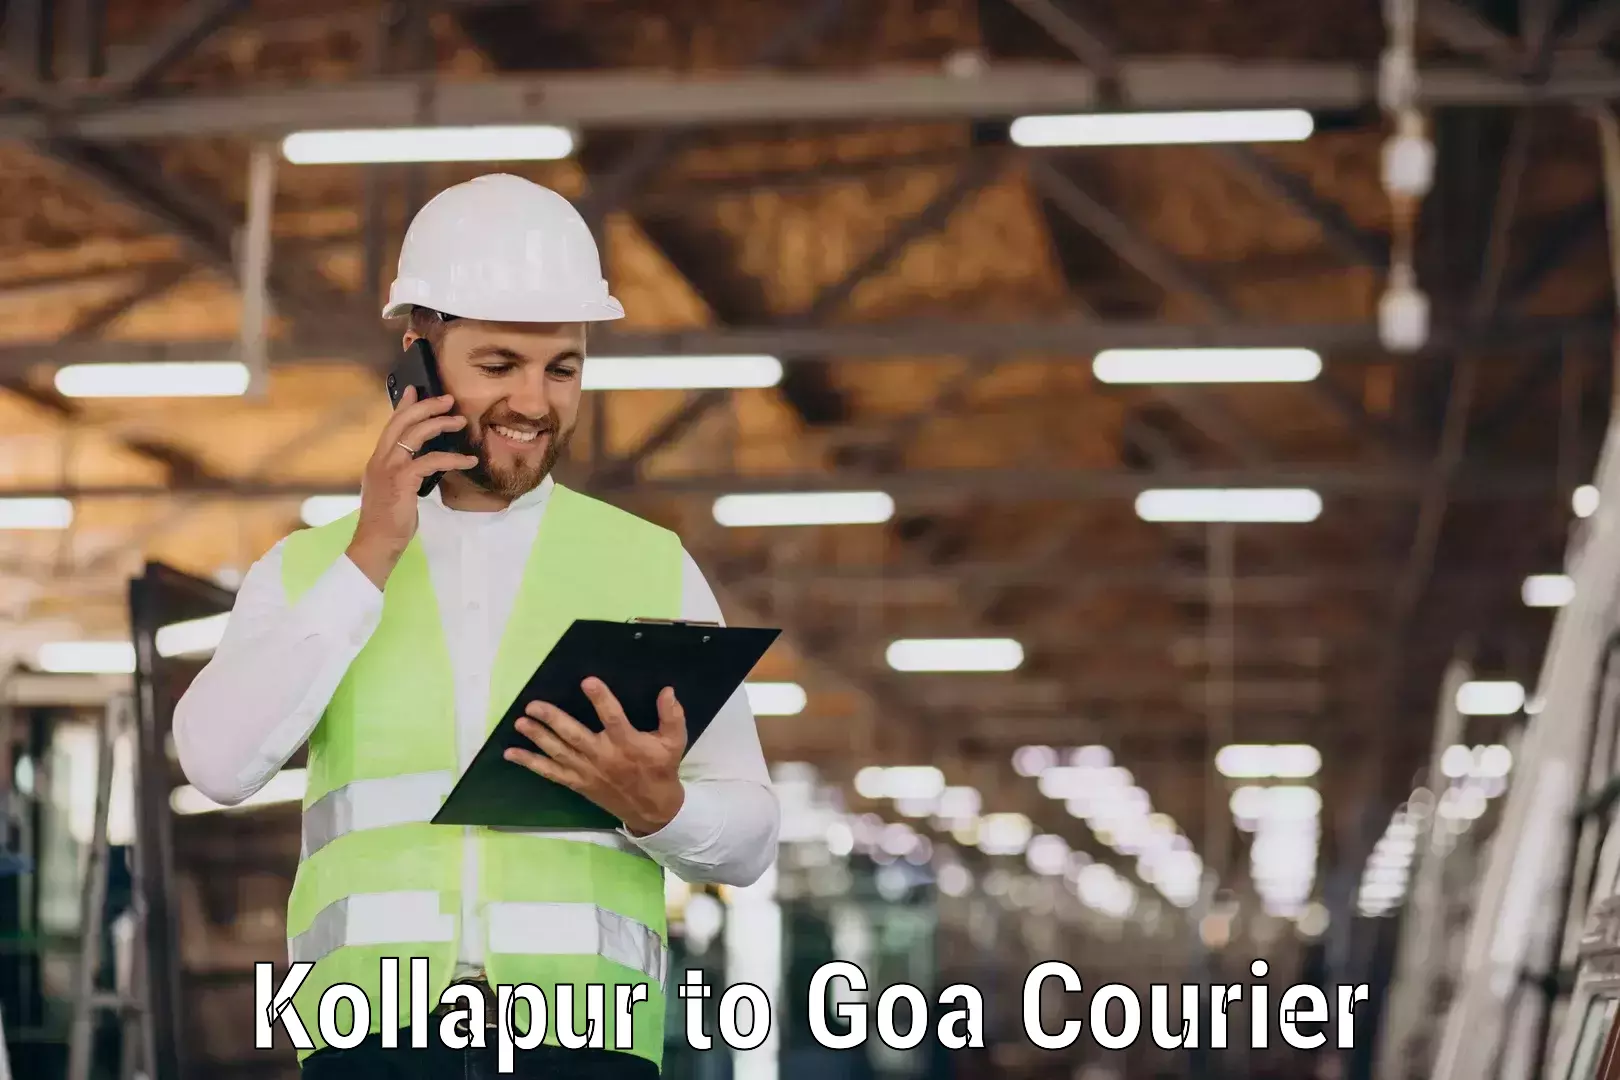 Efficient freight transportation Kollapur to IIT Goa